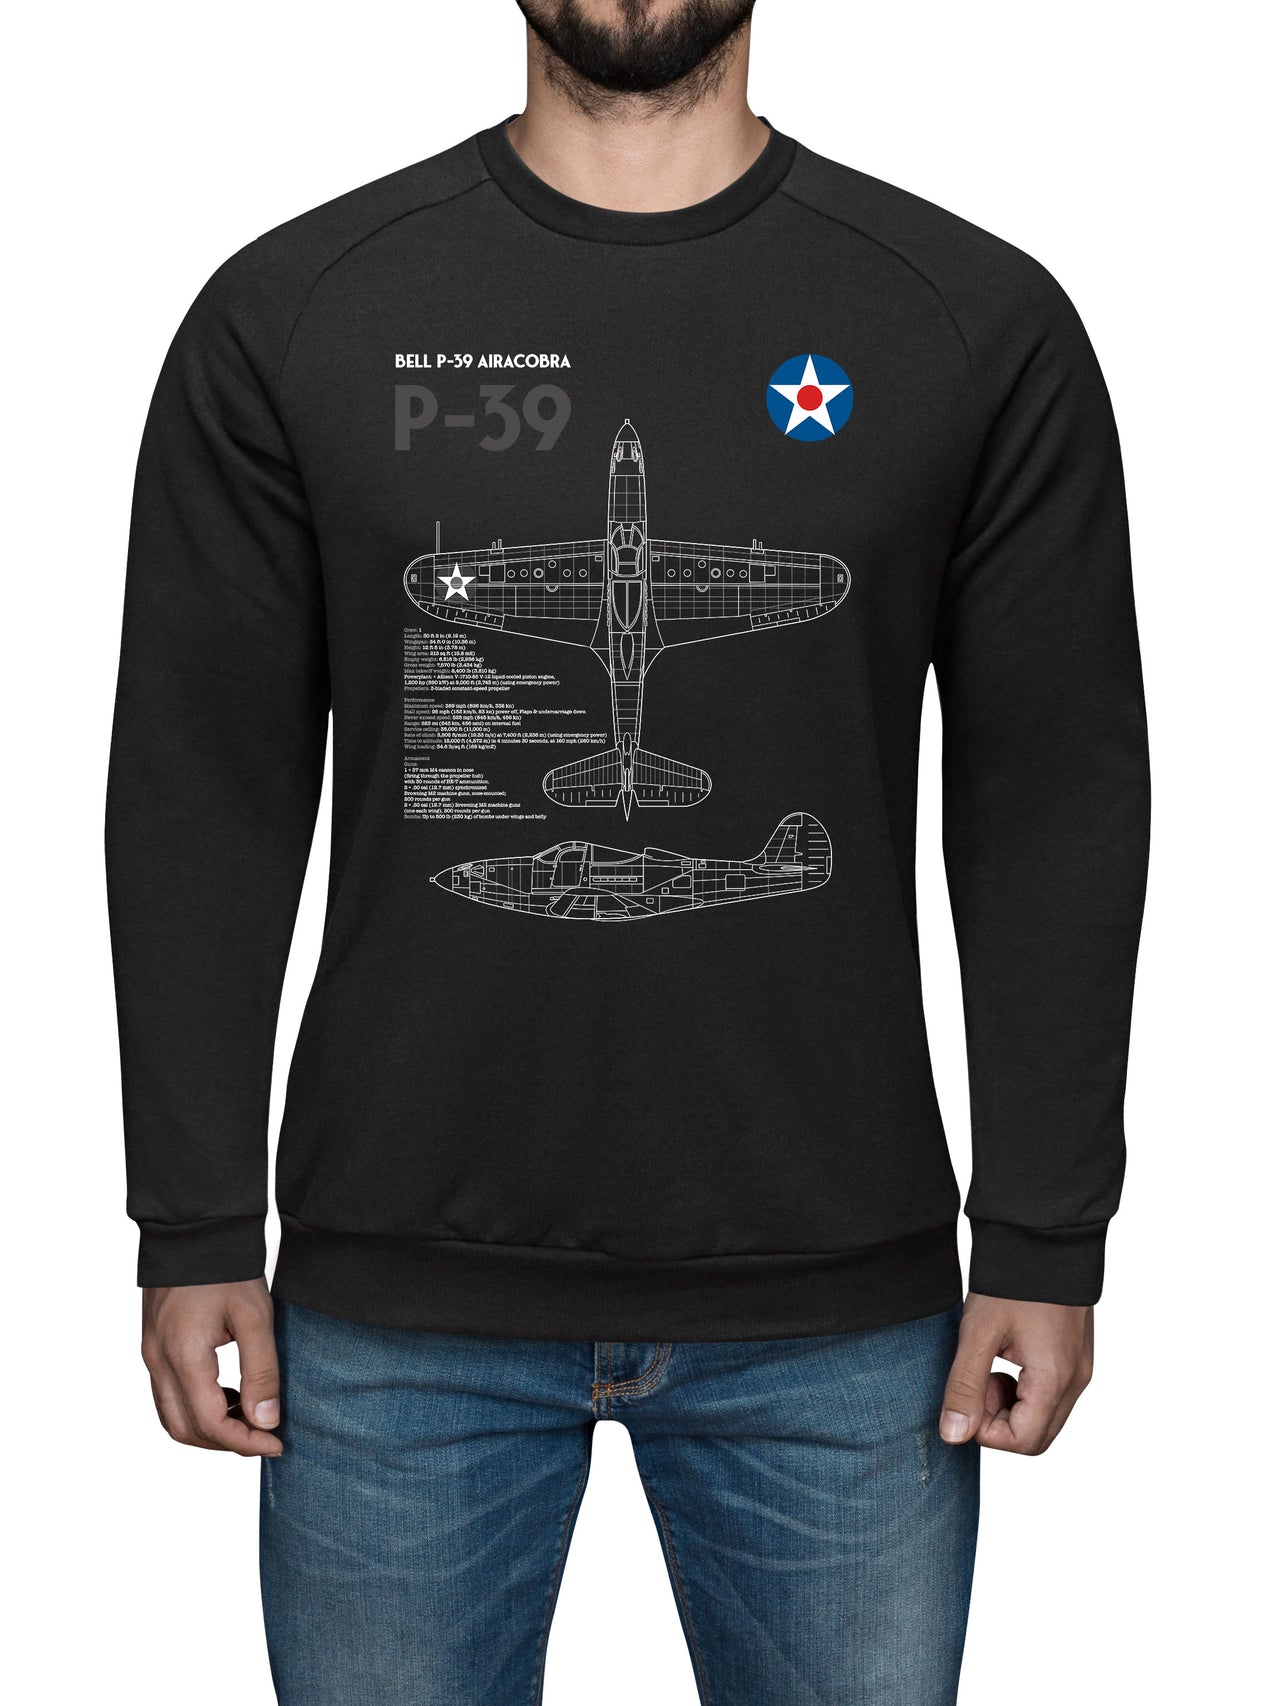 P-39 Airacobra - Sweat Shirt